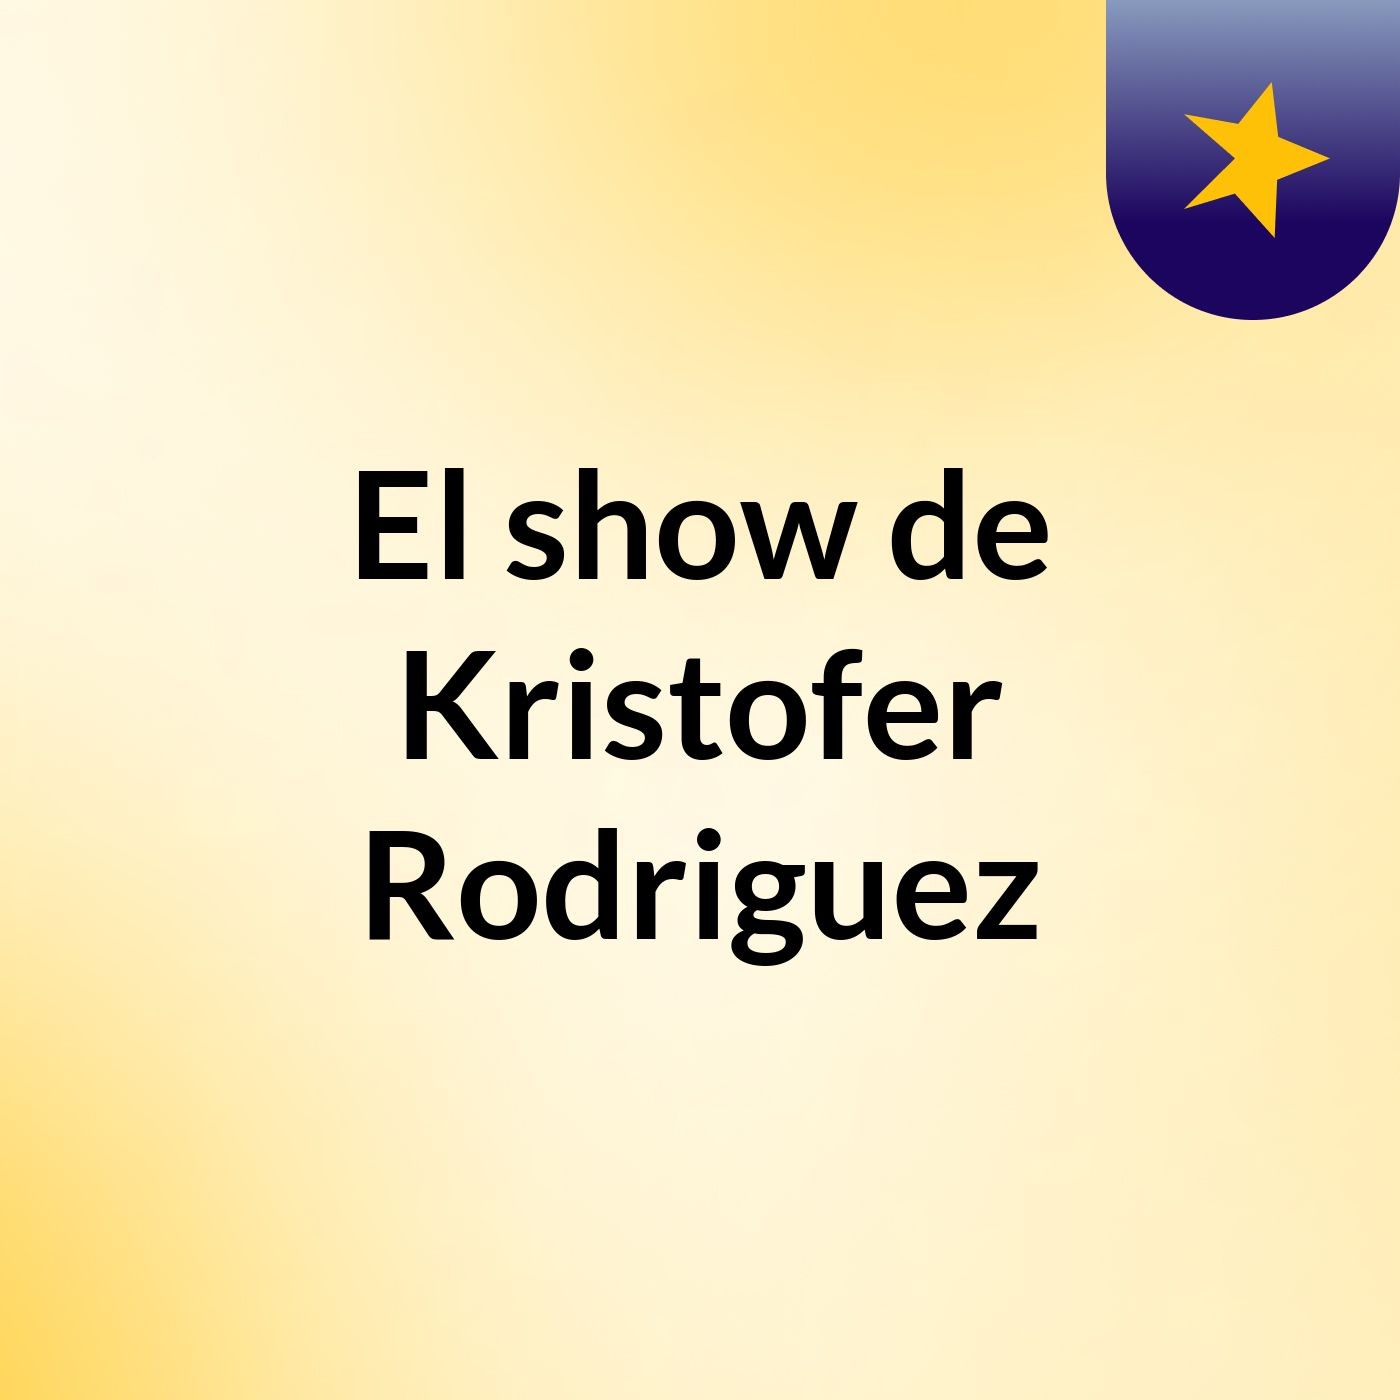 El show de Kristofer Rodriguez